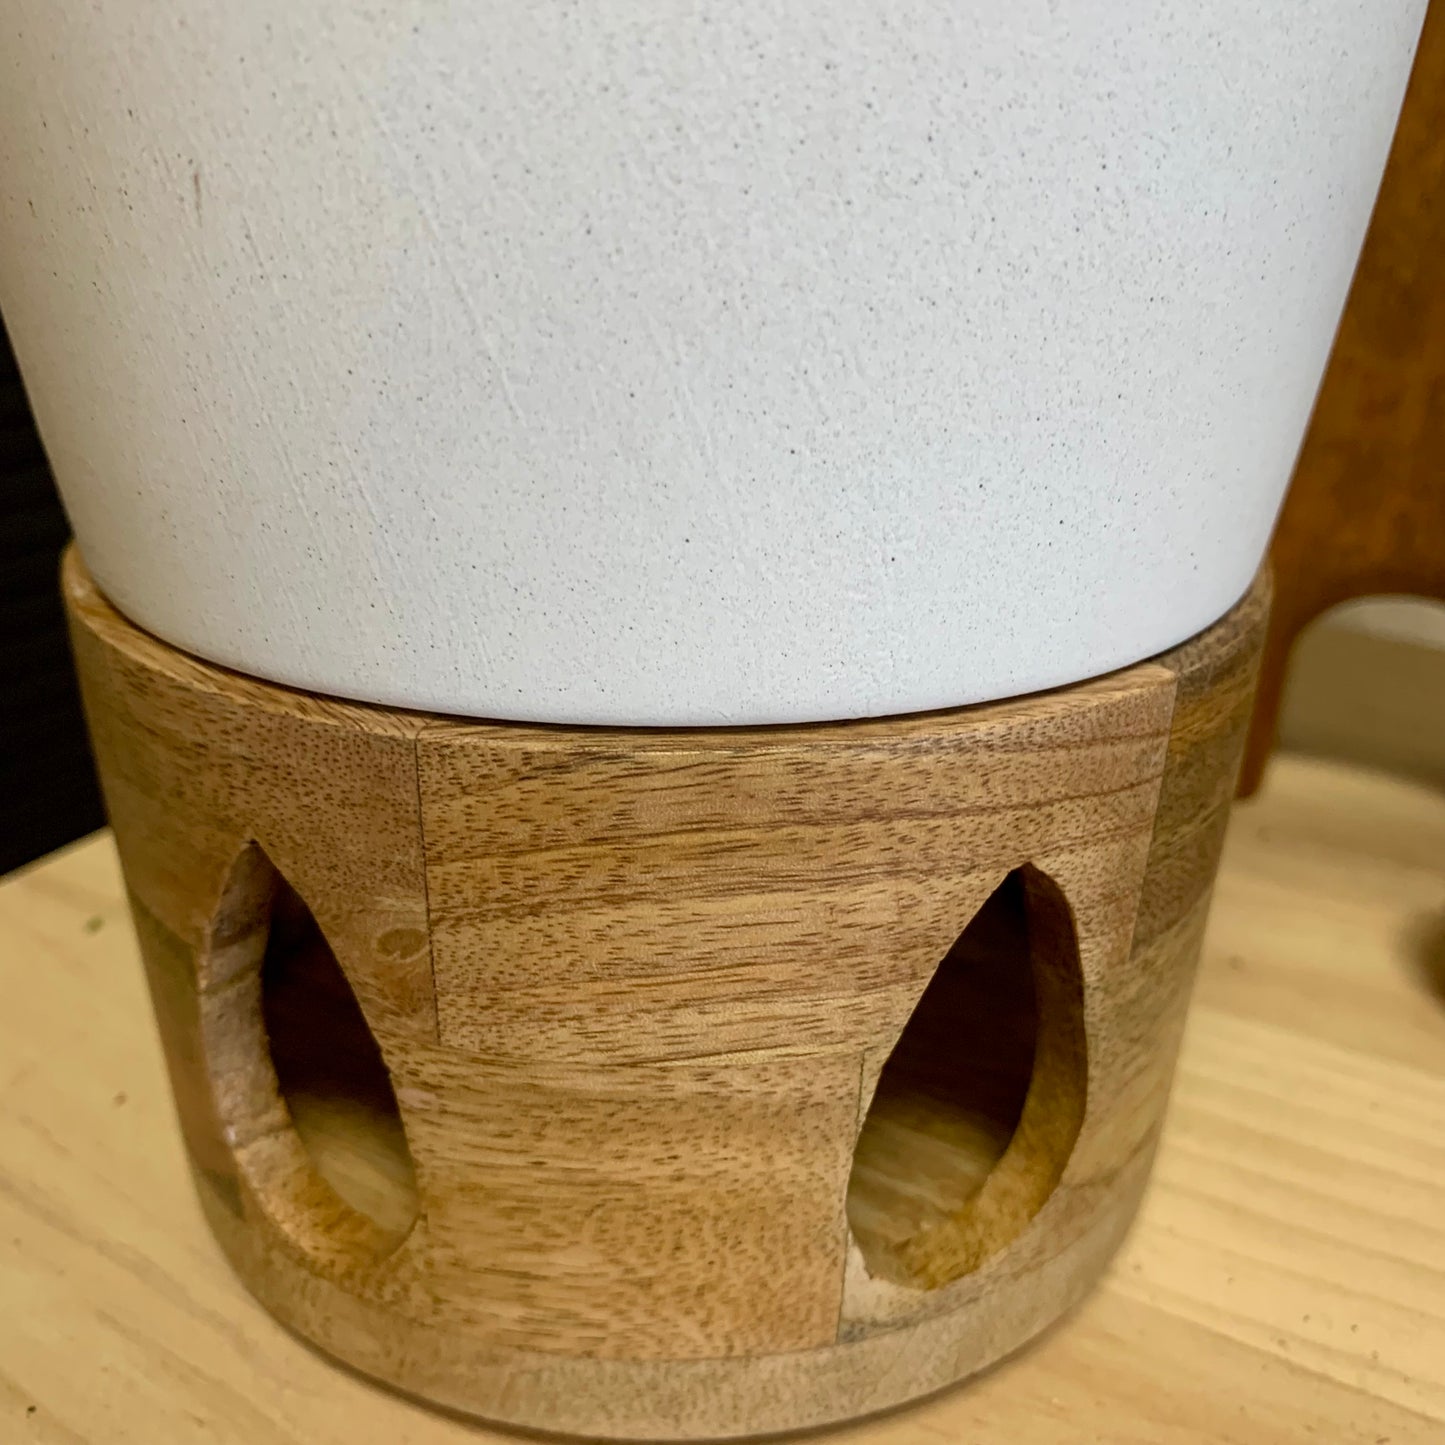 Ceramic + Wood Planter